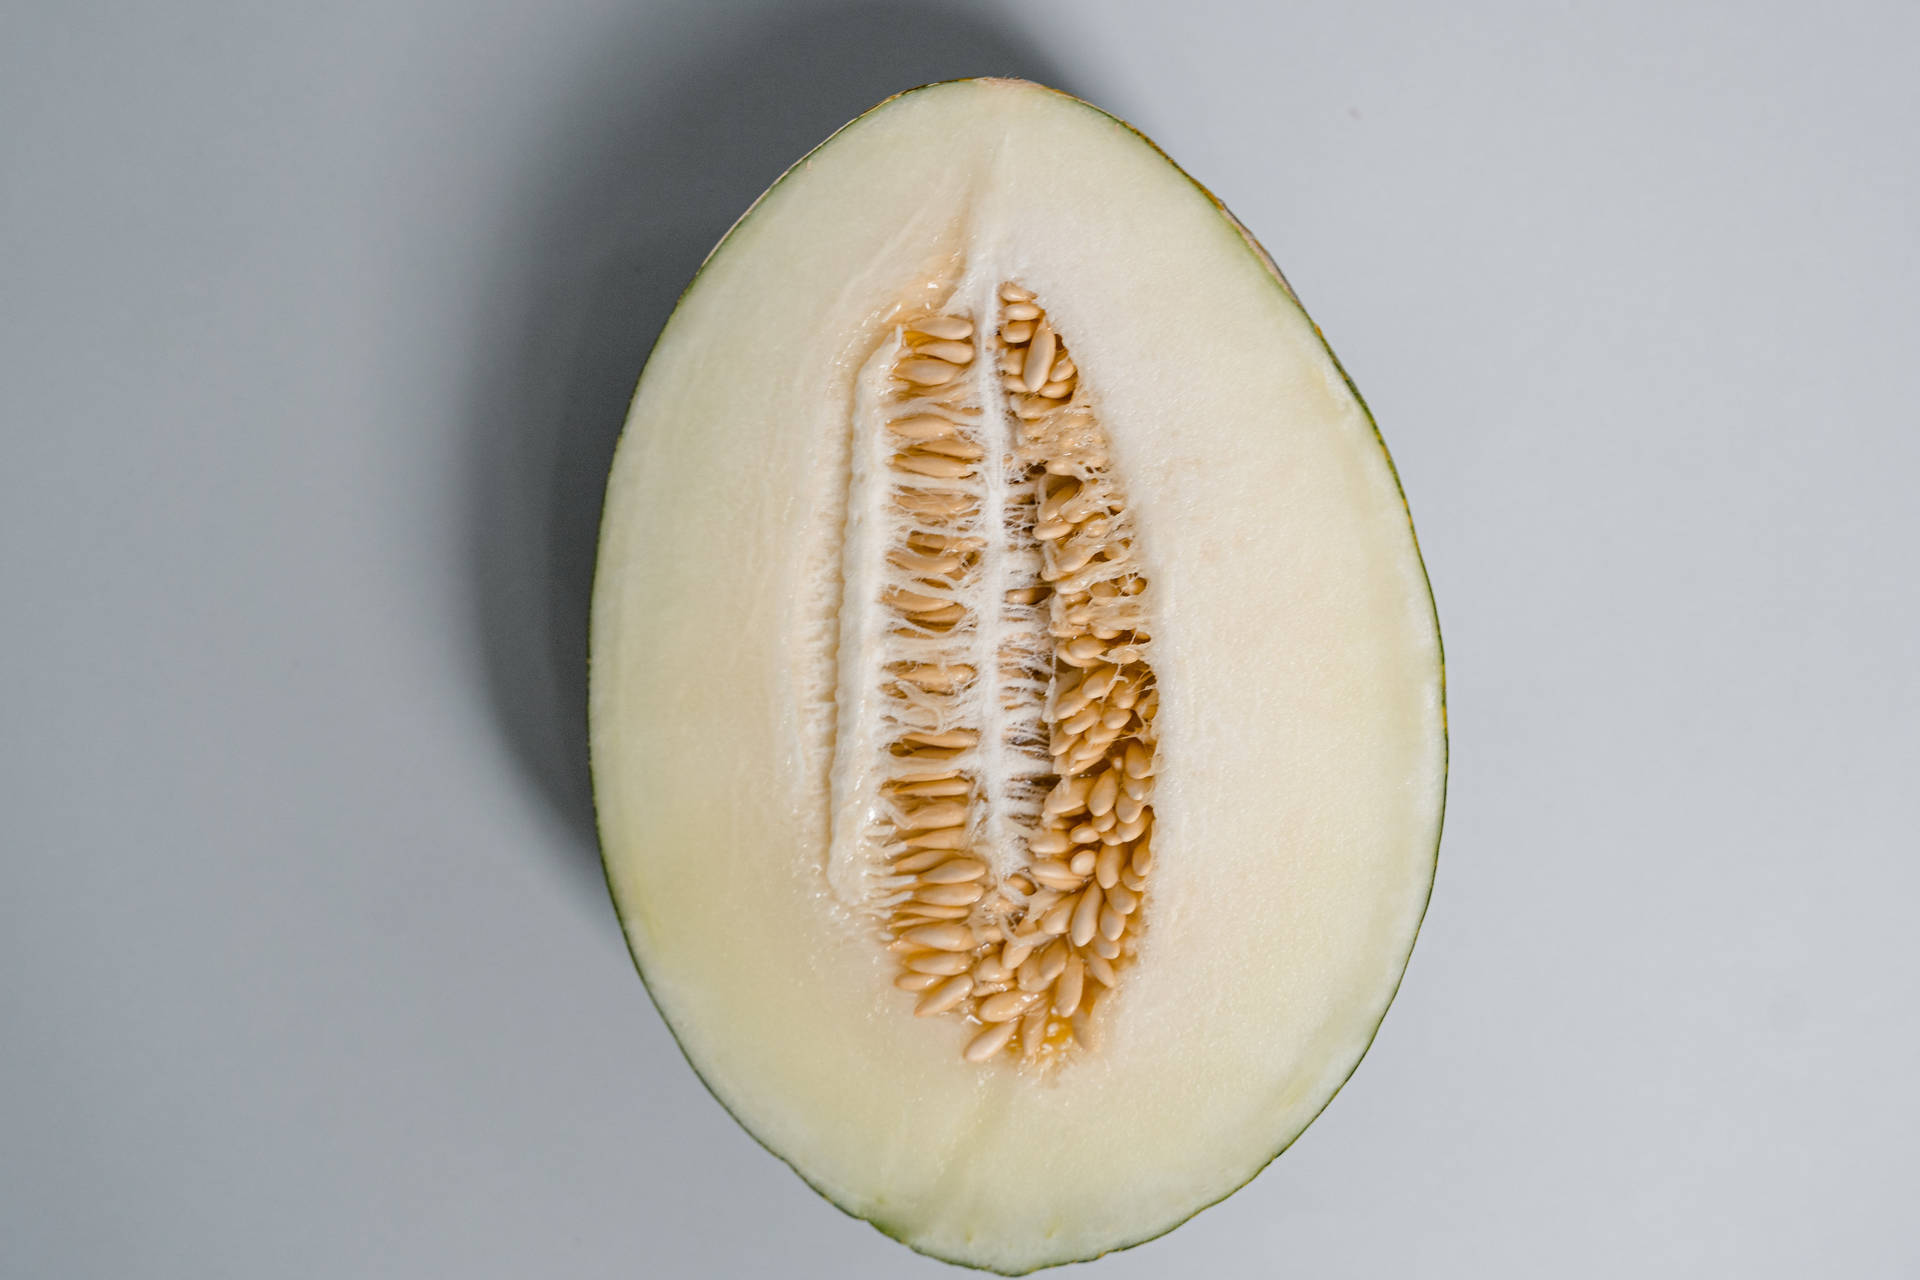 Honeydew Melon Seeds Wallpaper